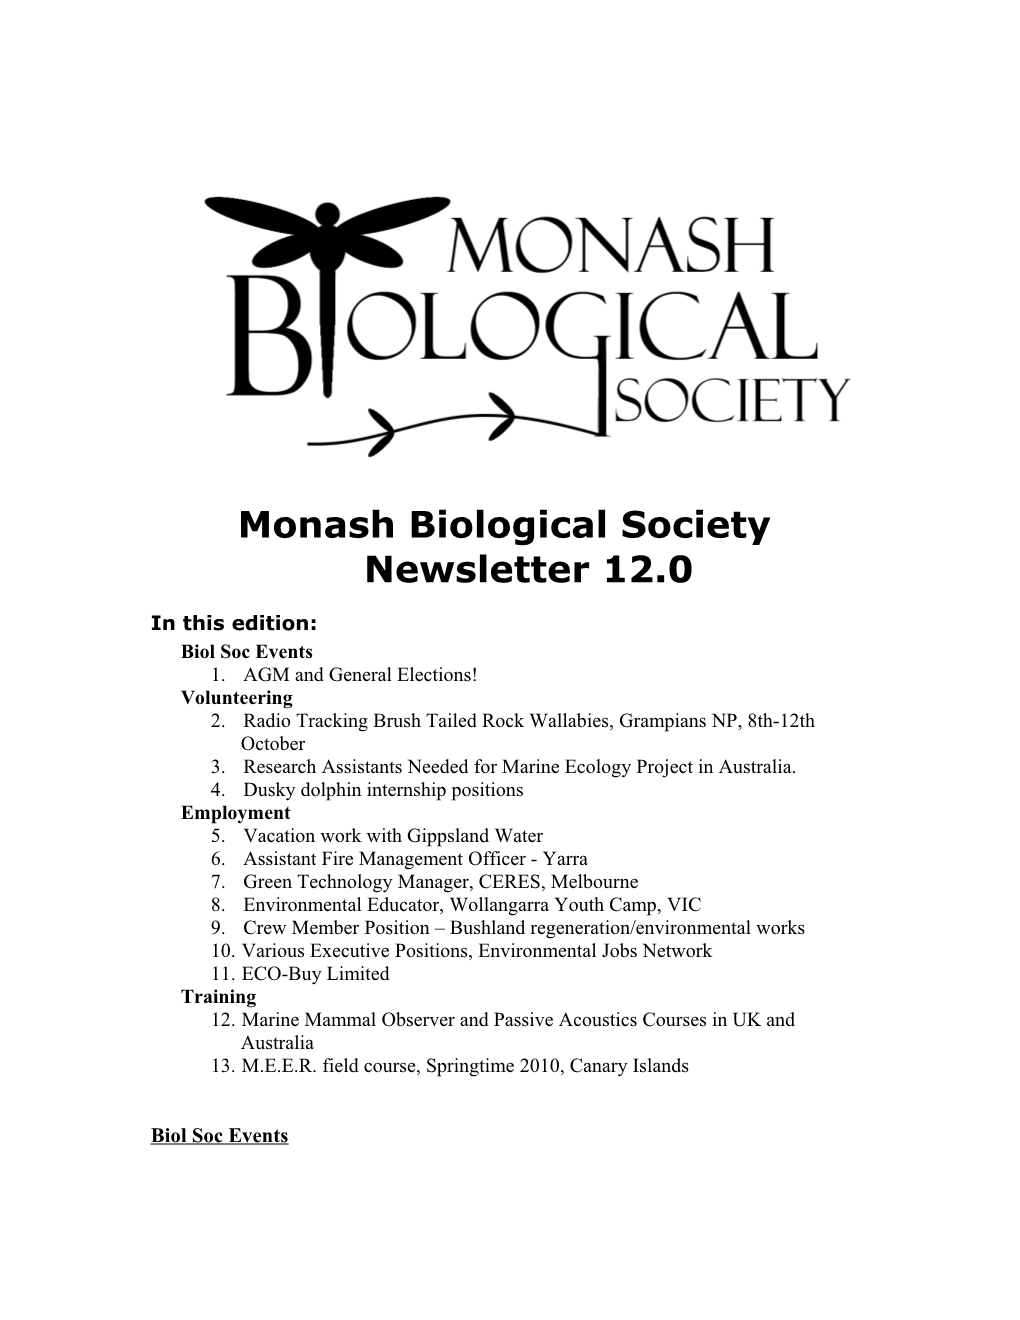 Monash Biological Society Newsletter 12.0